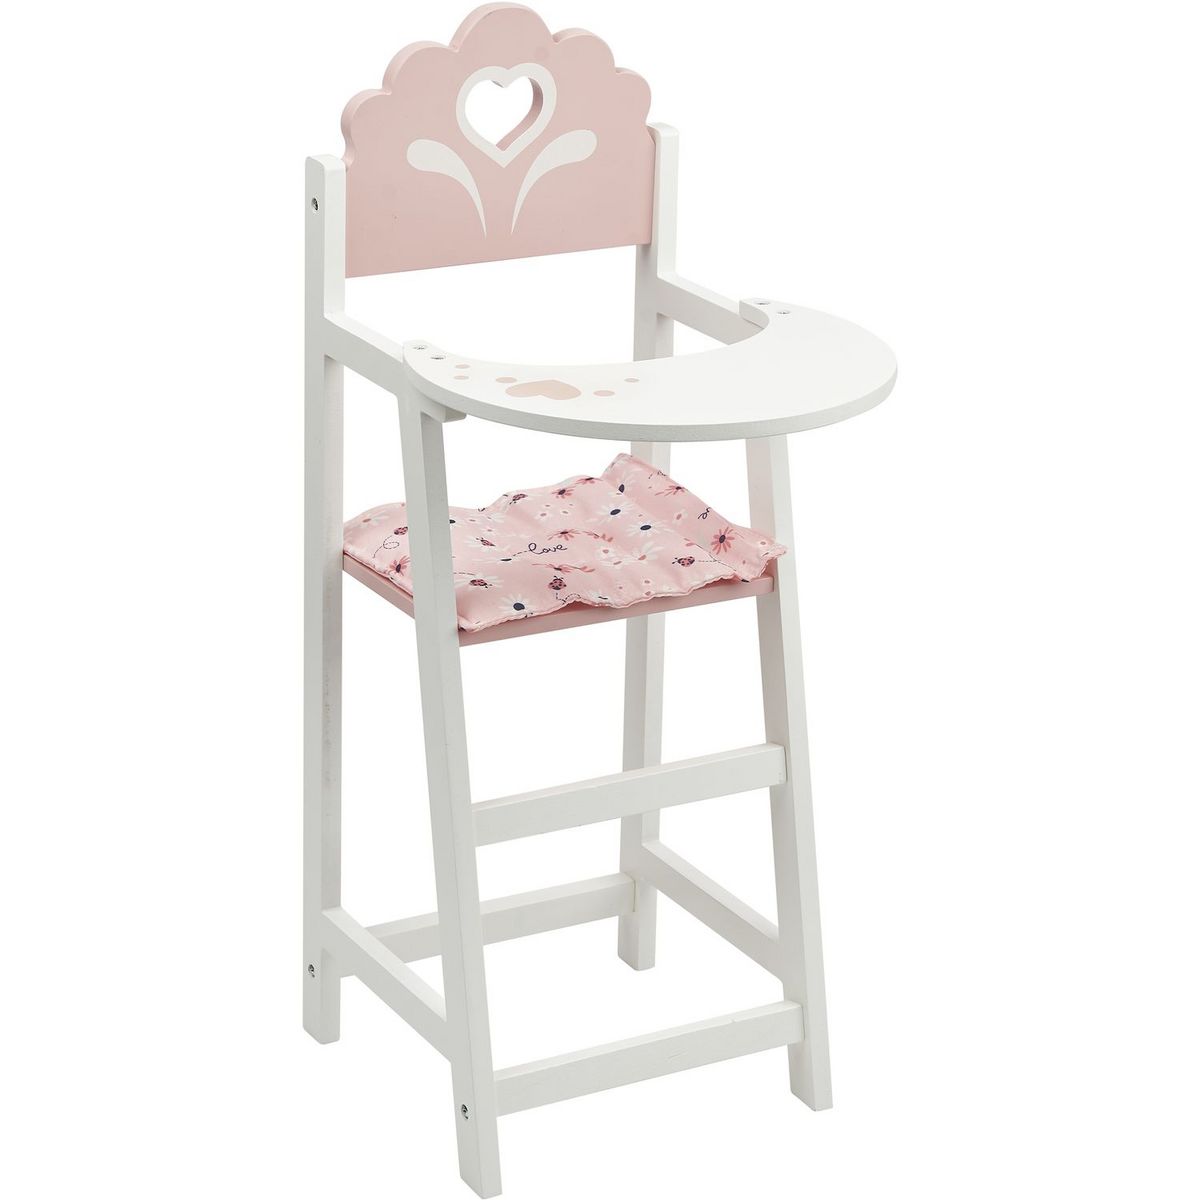 ONE TWO FUN Chaise haute en bois pour poupée - Blanc et Rose pas